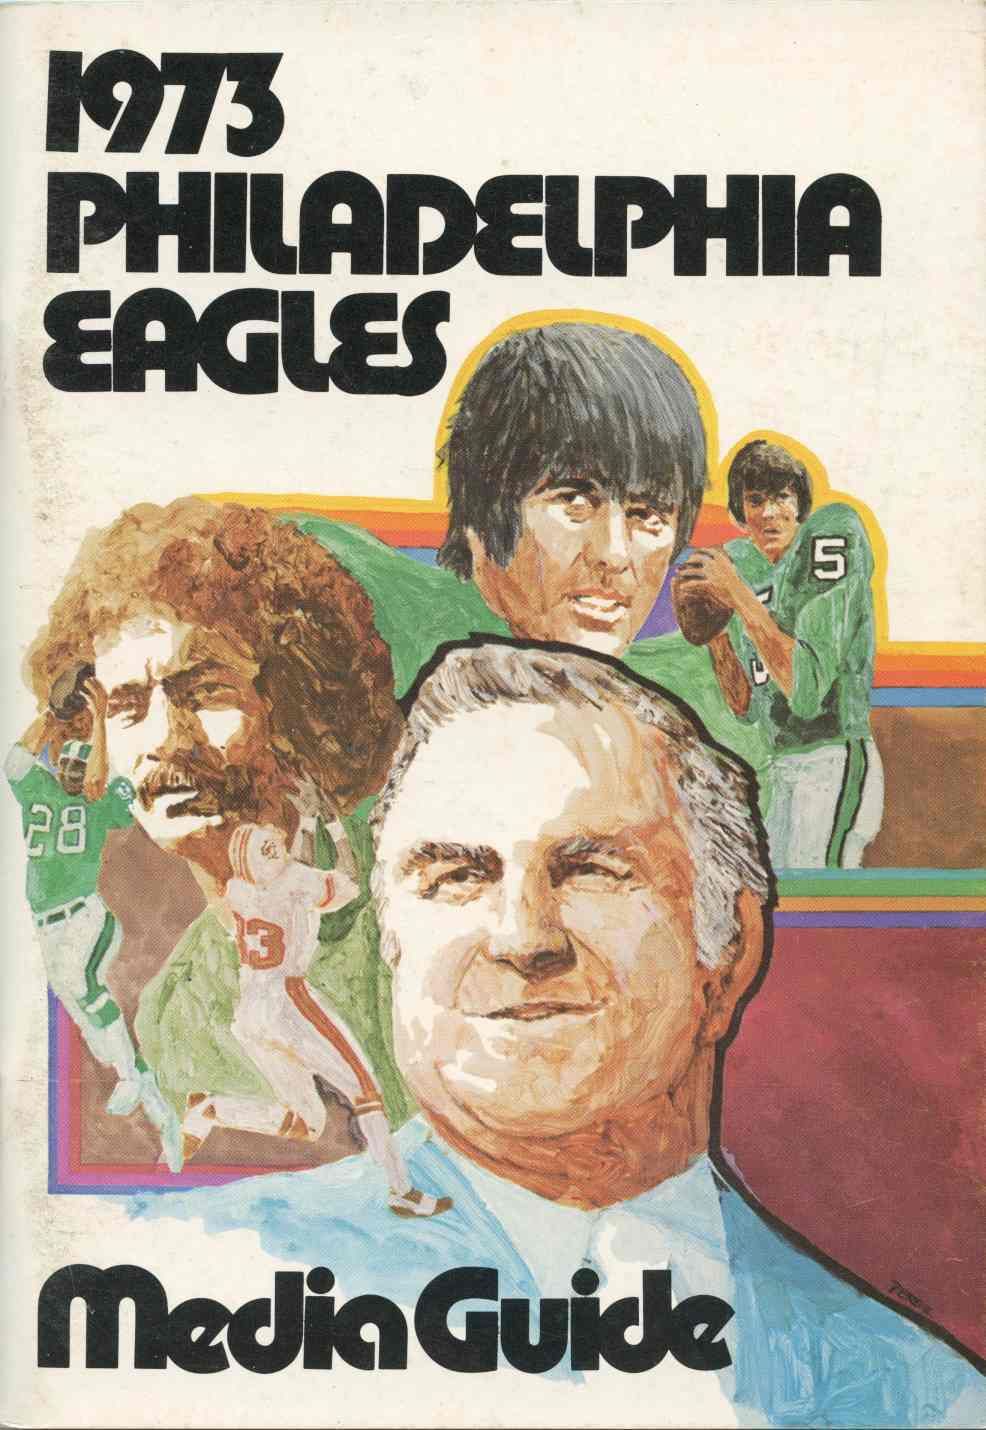 eagles tour dates 1973